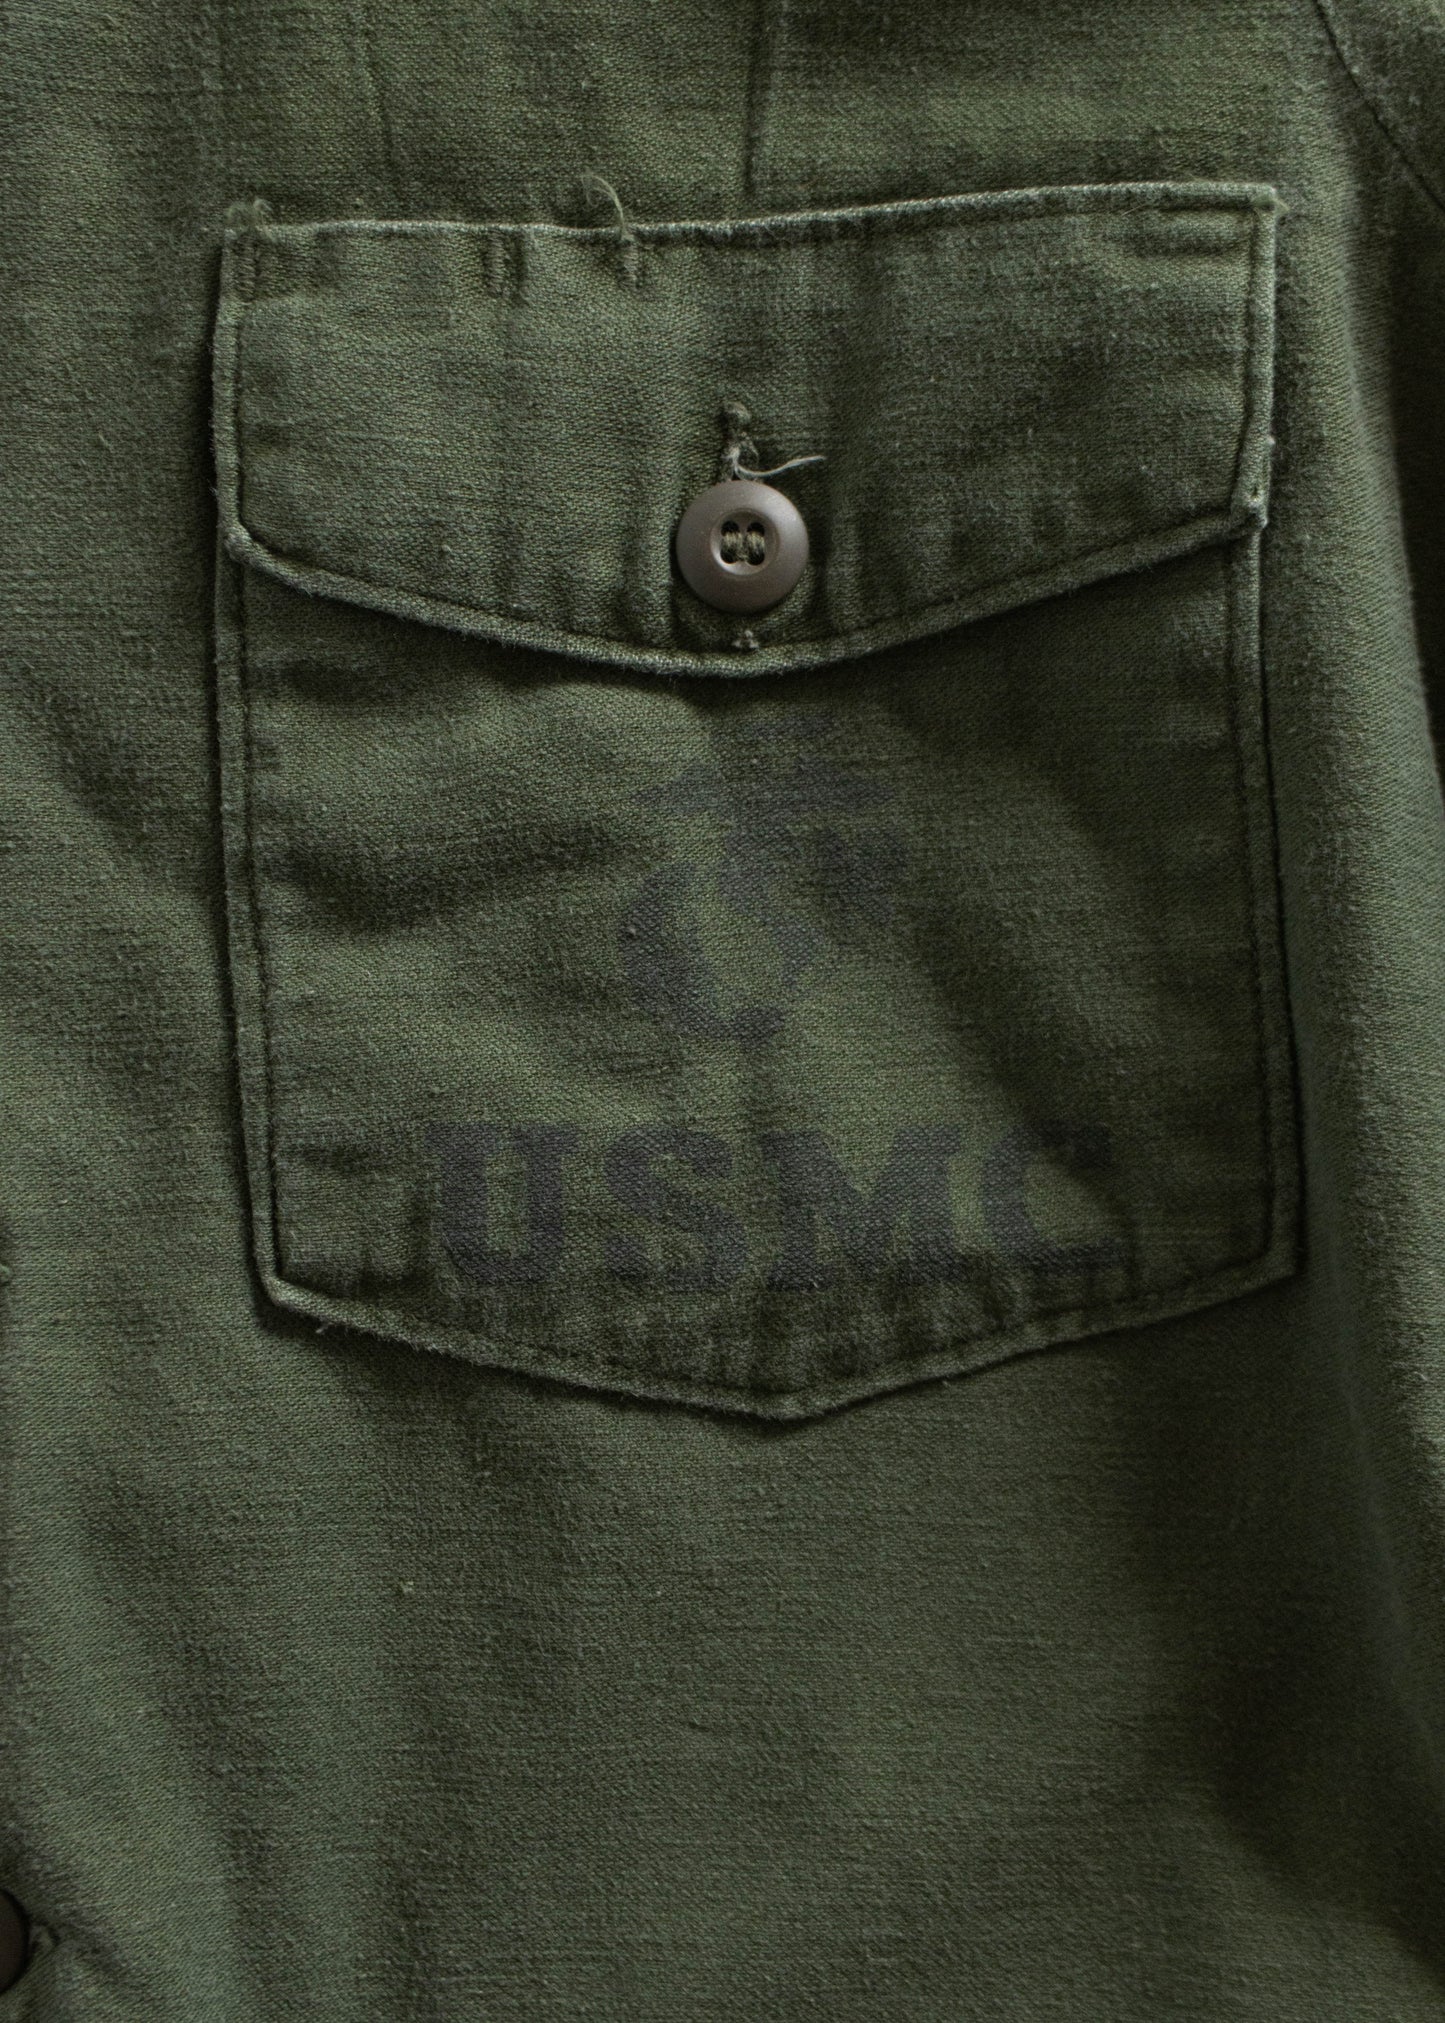 Vintage 1970s USMC OG 107 Type I Fatigue Shirt Size XS/S